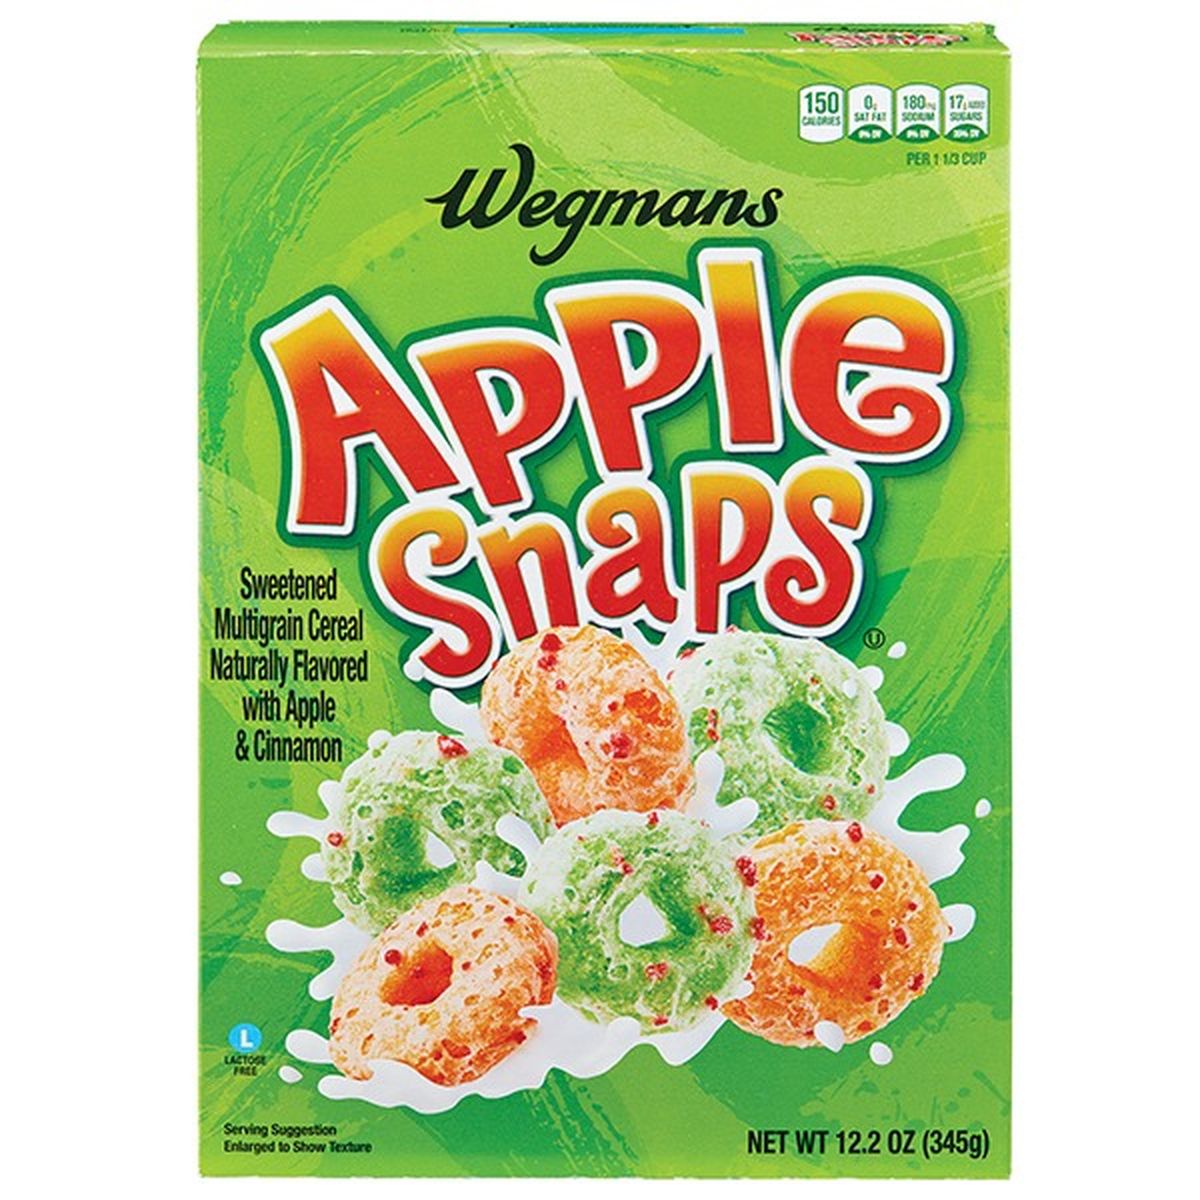 Calories in Wegmans Apple Snaps Cereal